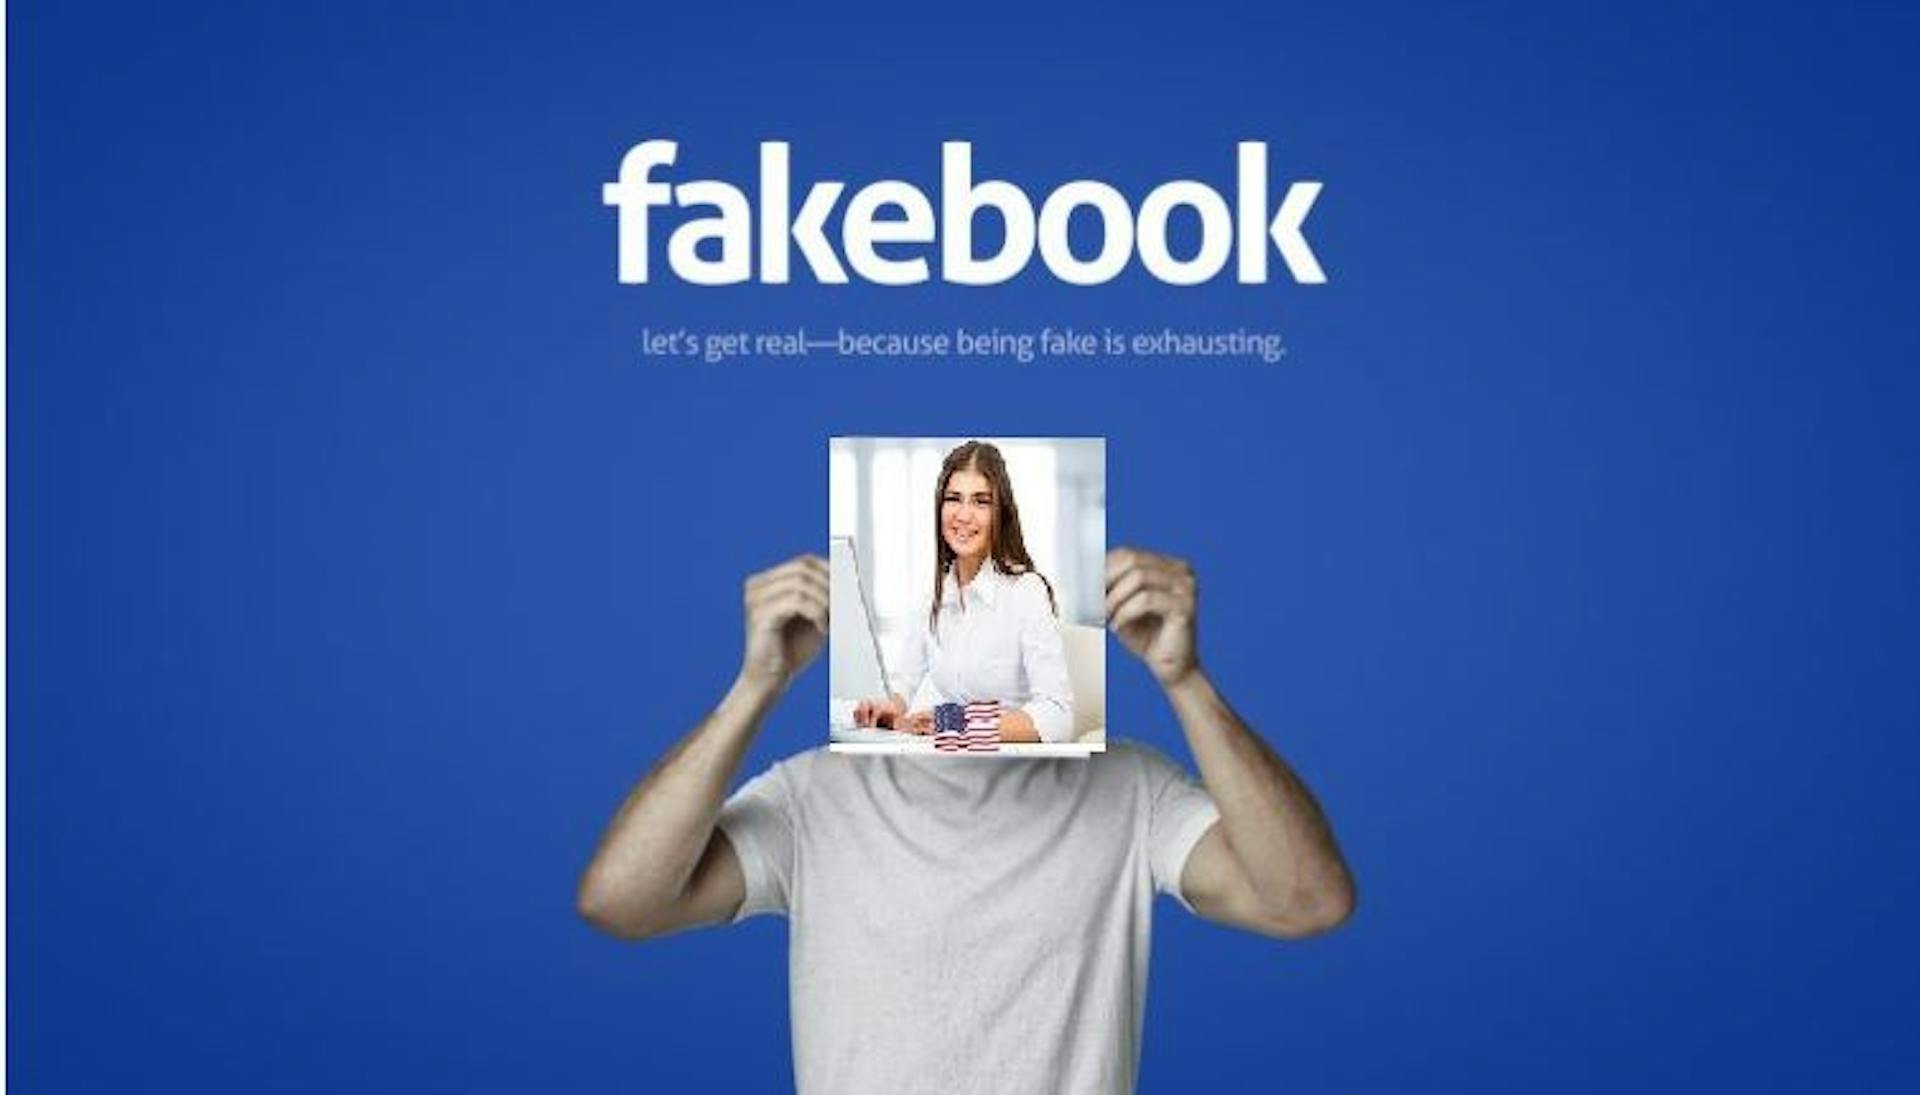 featured image - Rencontrez Lucy Audrey, le faux profil malhonnête que Facebook refuse de suspendre